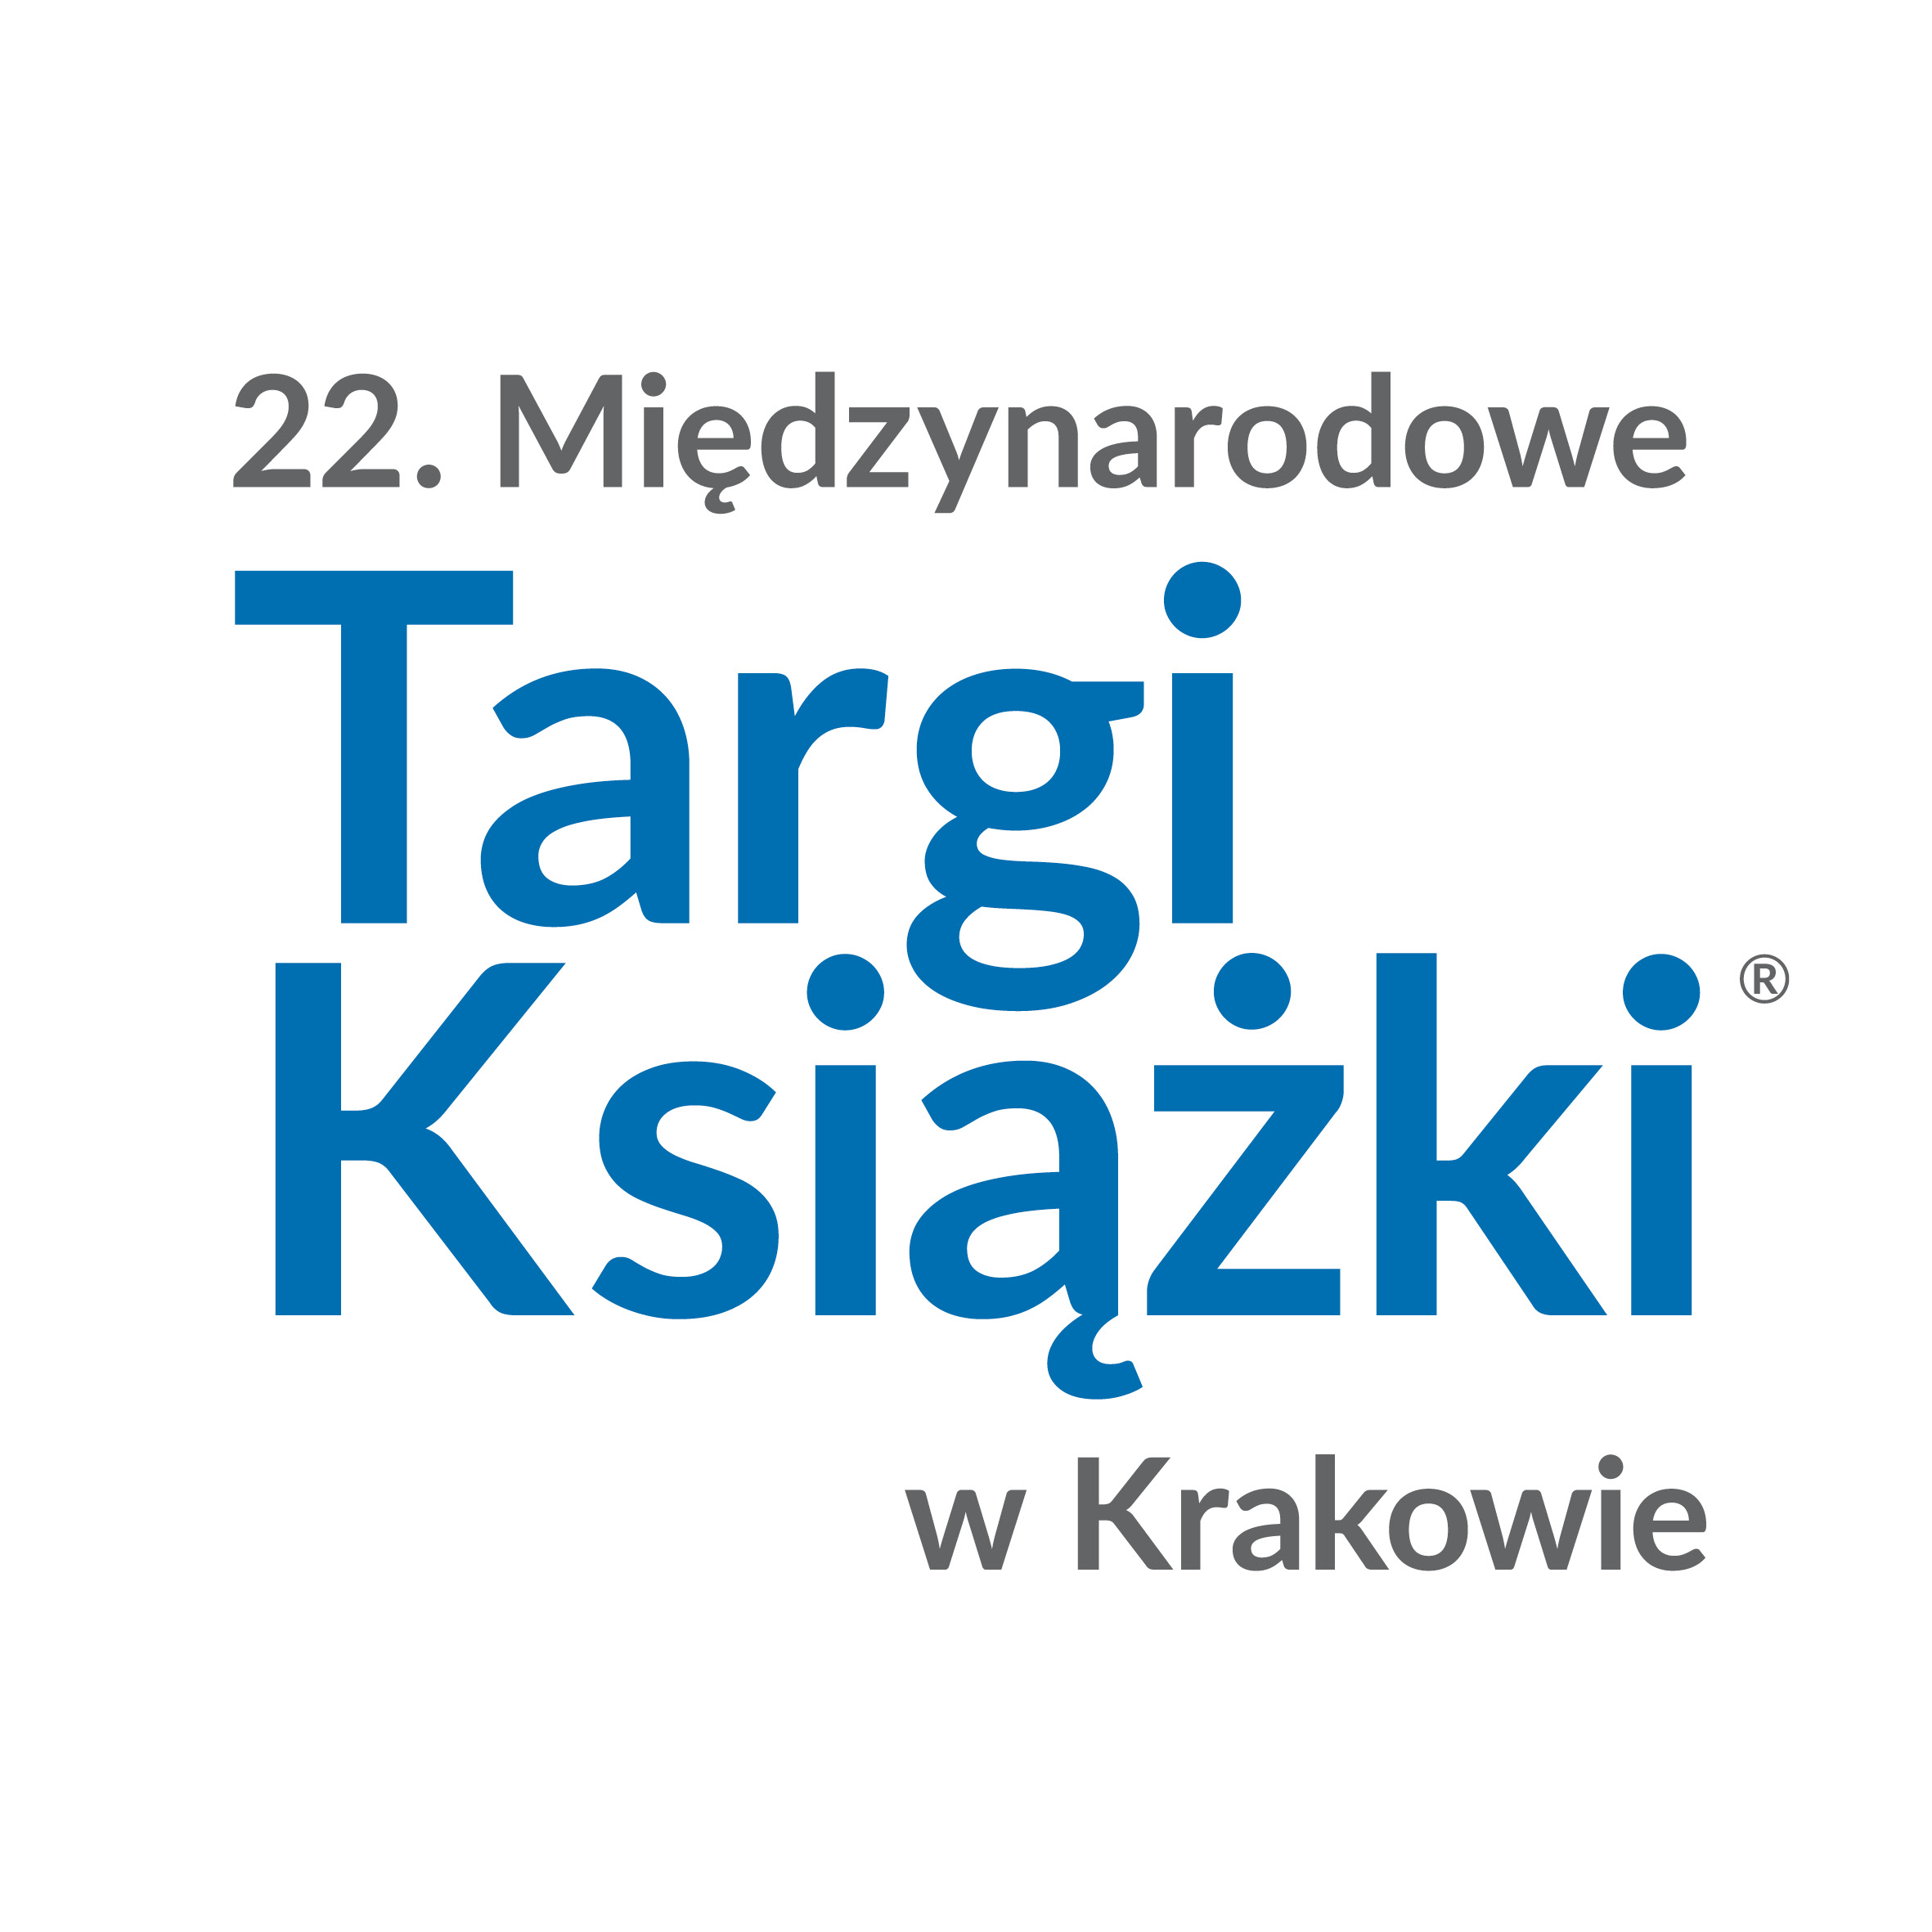 Grafika z logiem Międzynarodowych Targów Książki w Krakowie